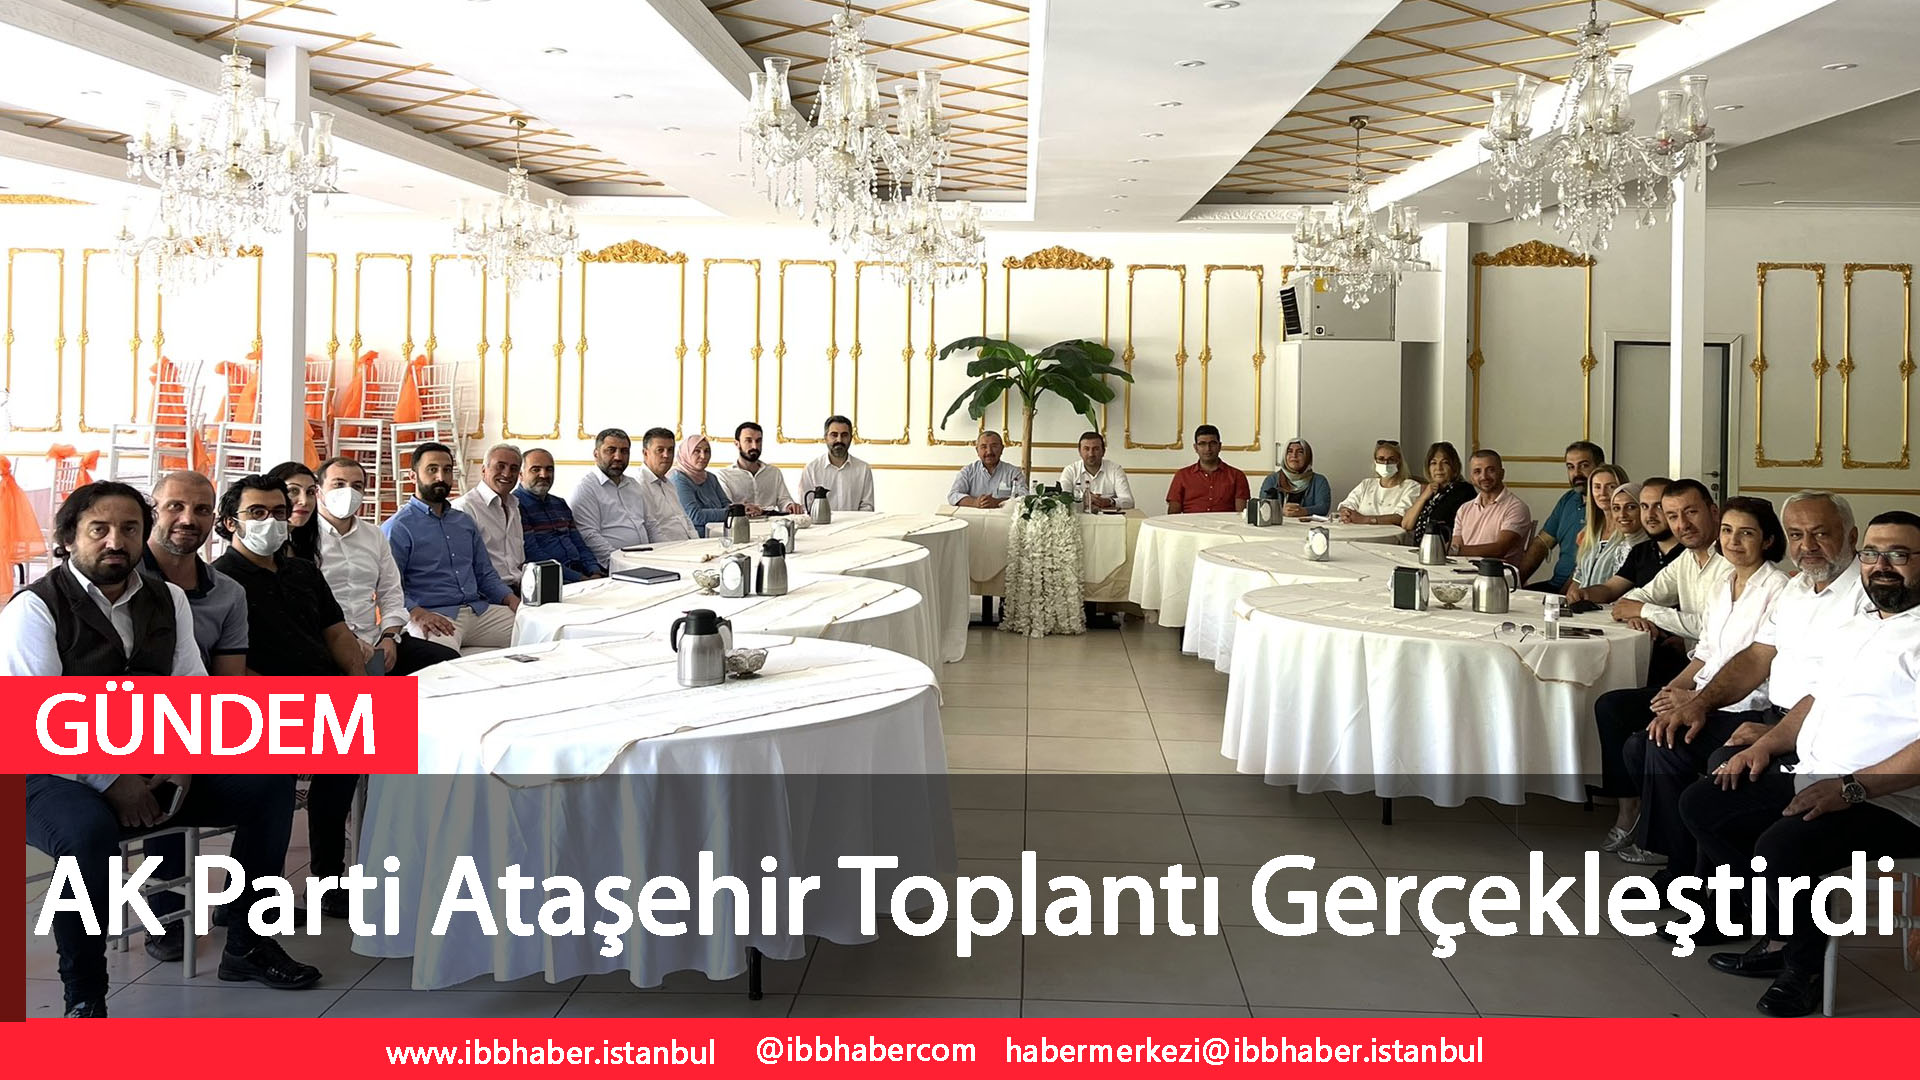 AK Parti Ataşehir Toplantı Gerçekleştirdi